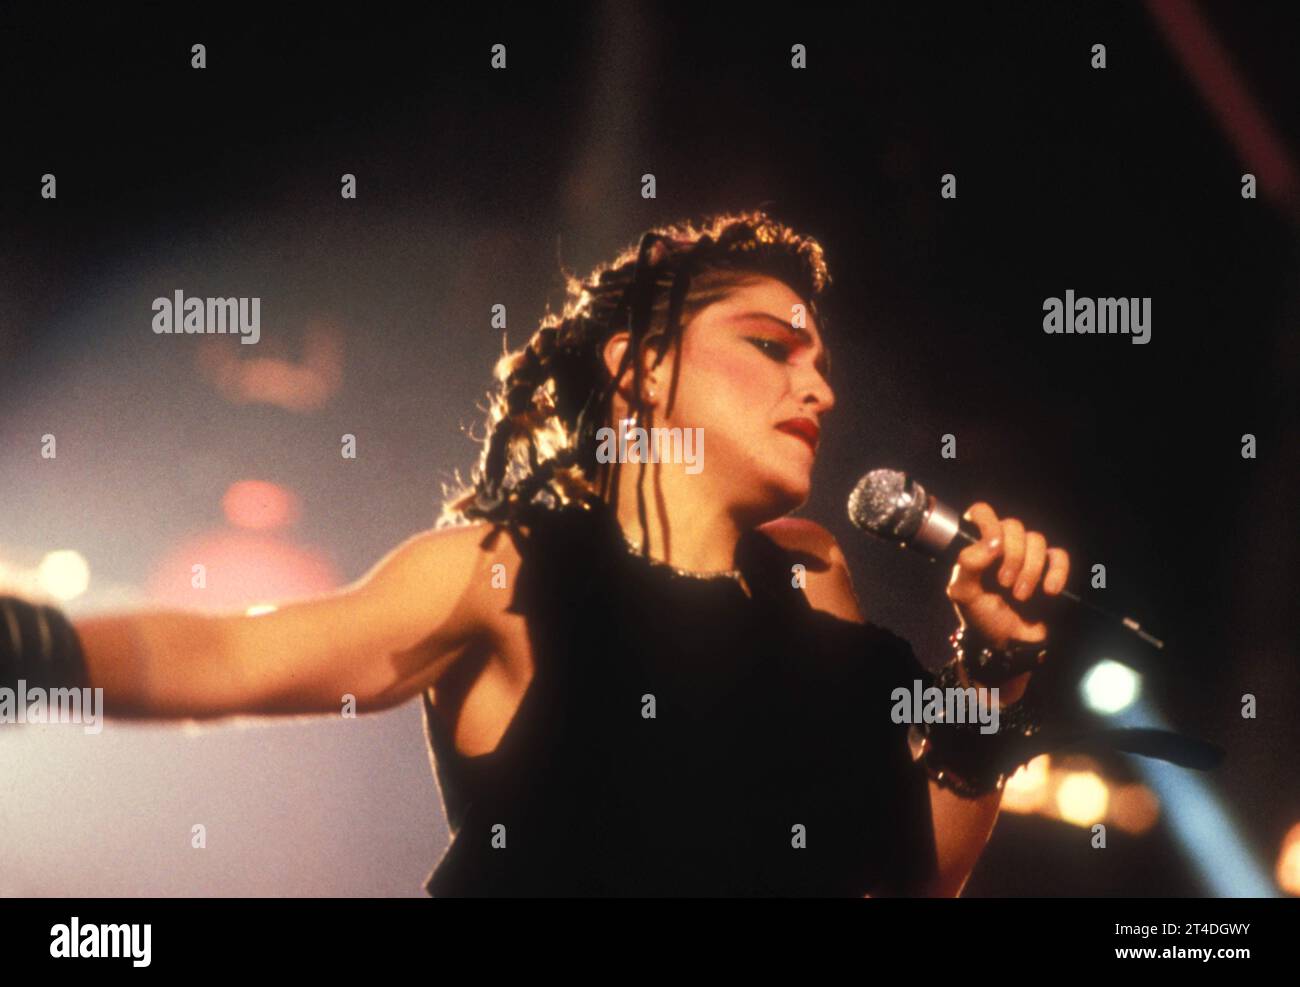 MADONNA ; Madonna Louise Ciccone ; née le 16 août 1958 ; chanteuse, compositrice et actrice américaine ; se produisant dans les années 1980 ; 15 juin 1983 ; États-Unis ; crédit : Lynn McAfee / Performing Arts Images www.performingartsimages.com Banque D'Images